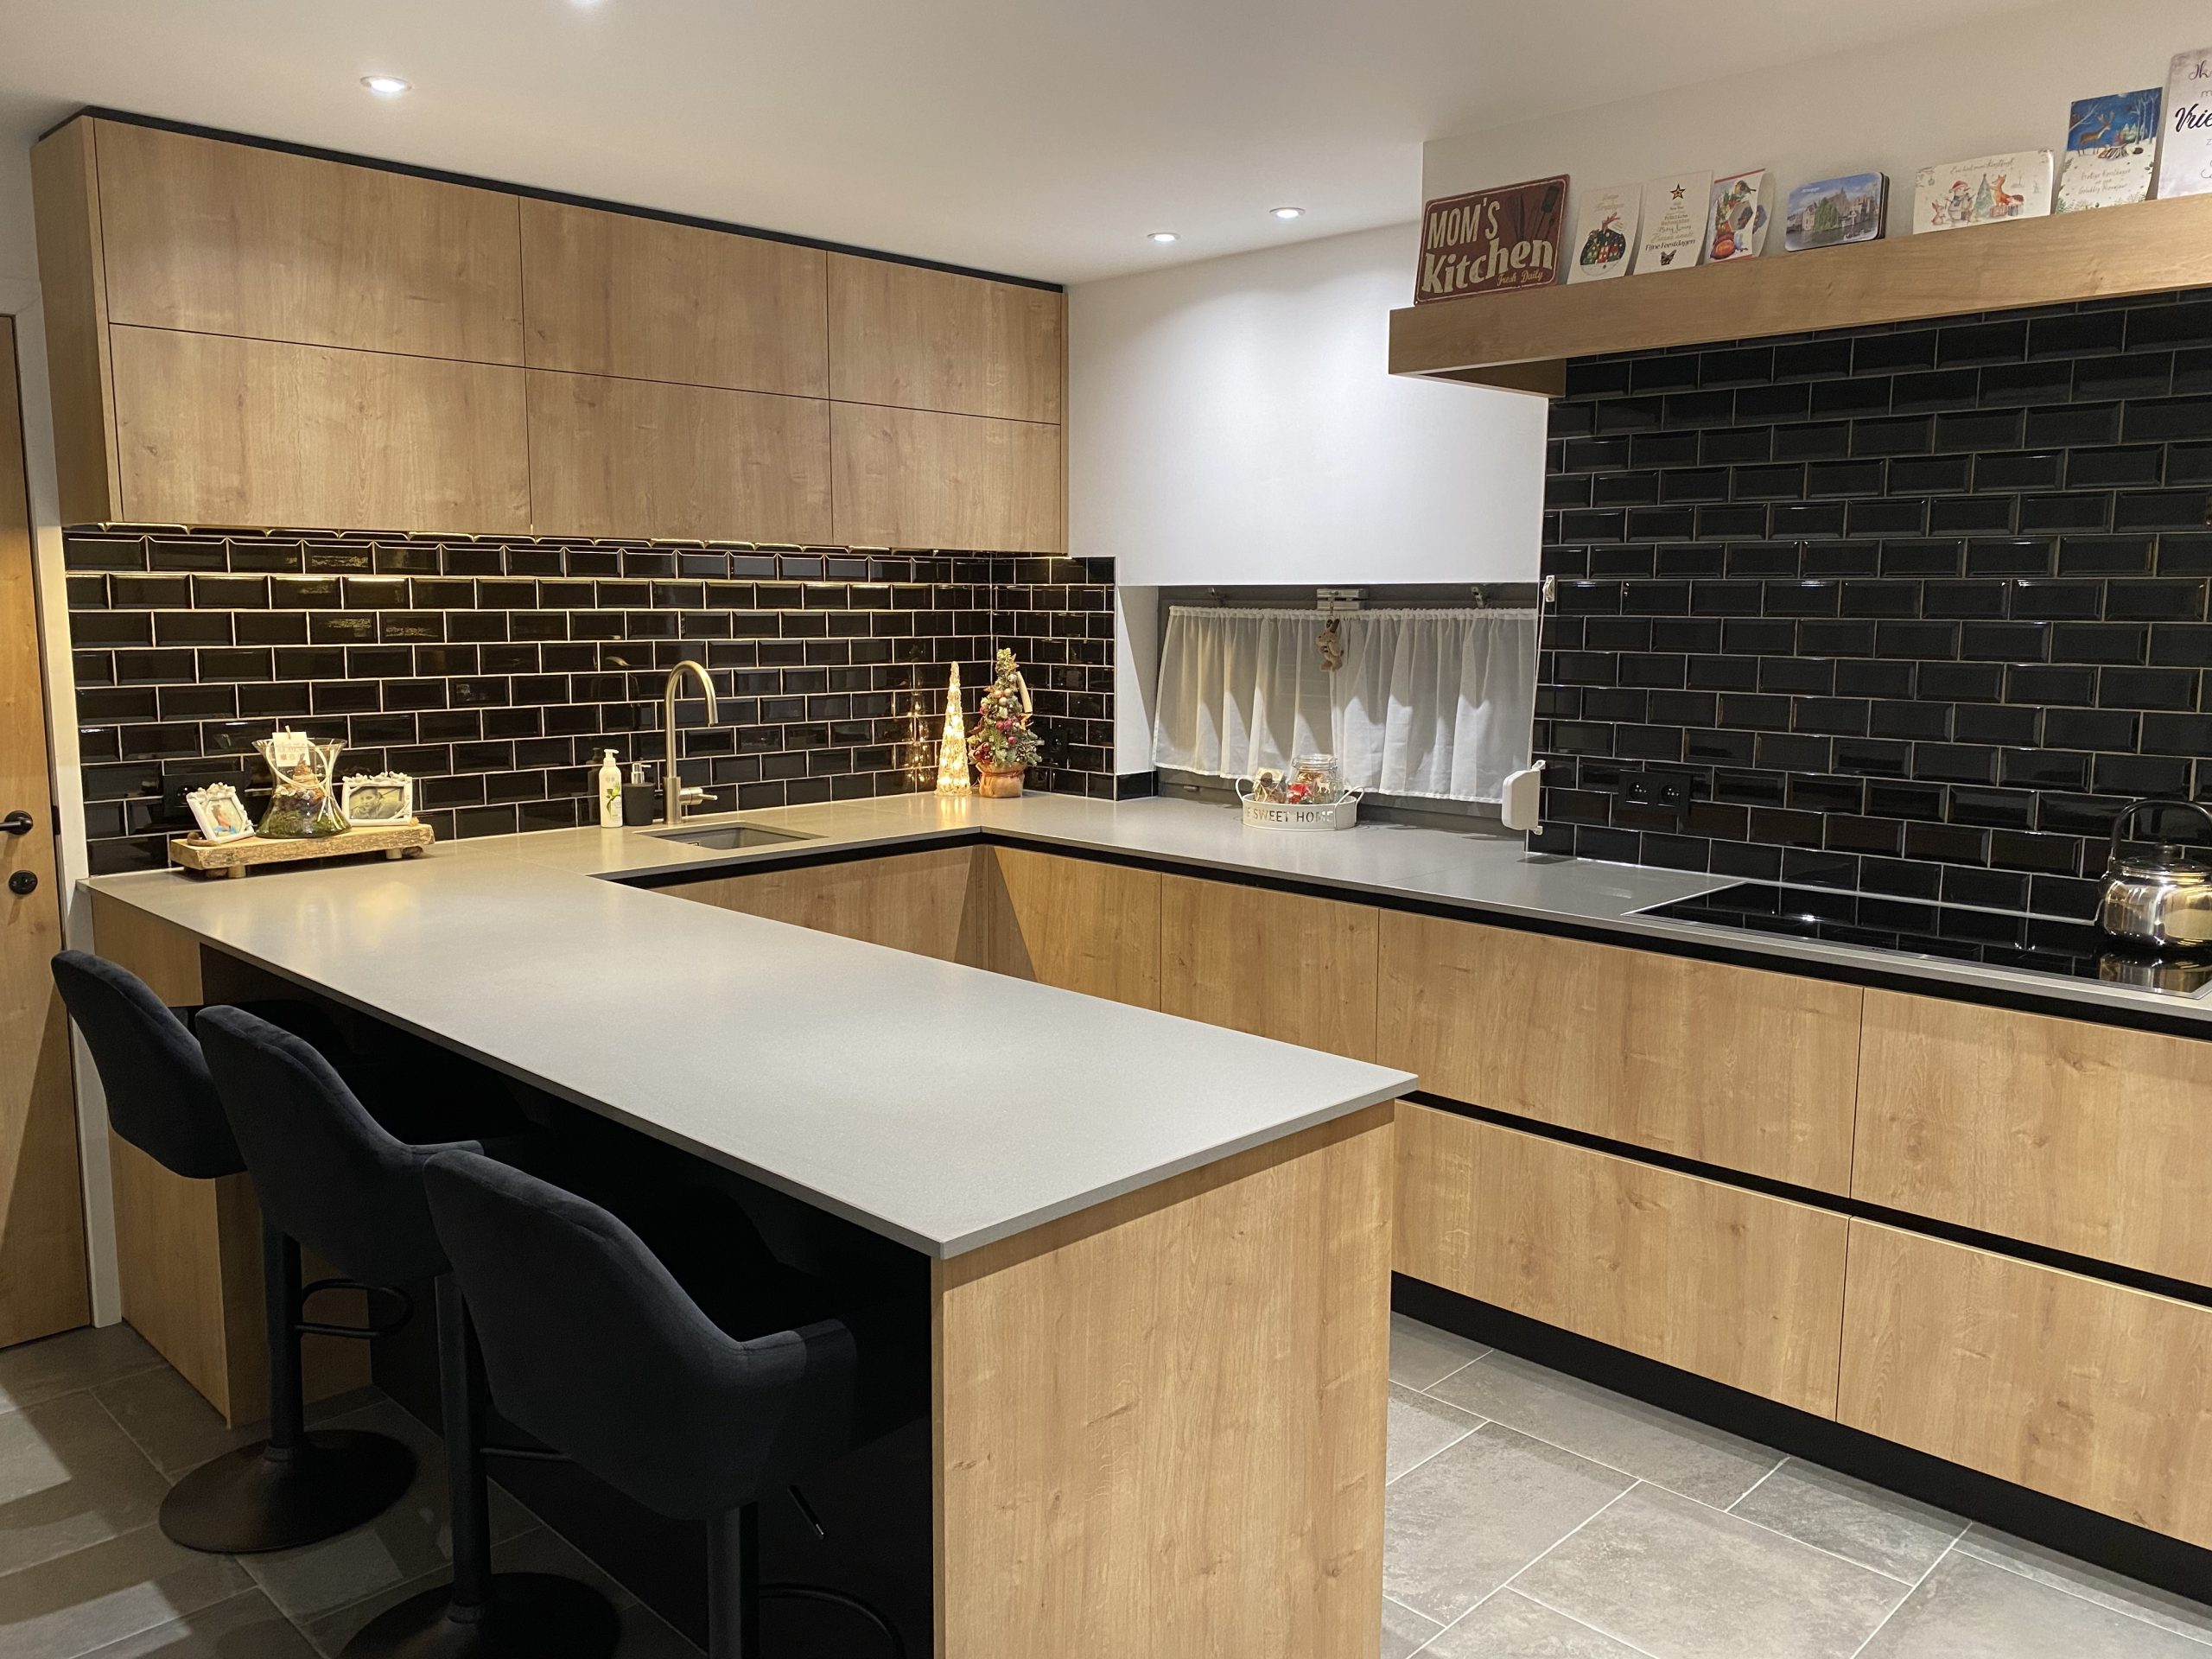 JB-Interieur Keuken in Houtkleur met zwarte details